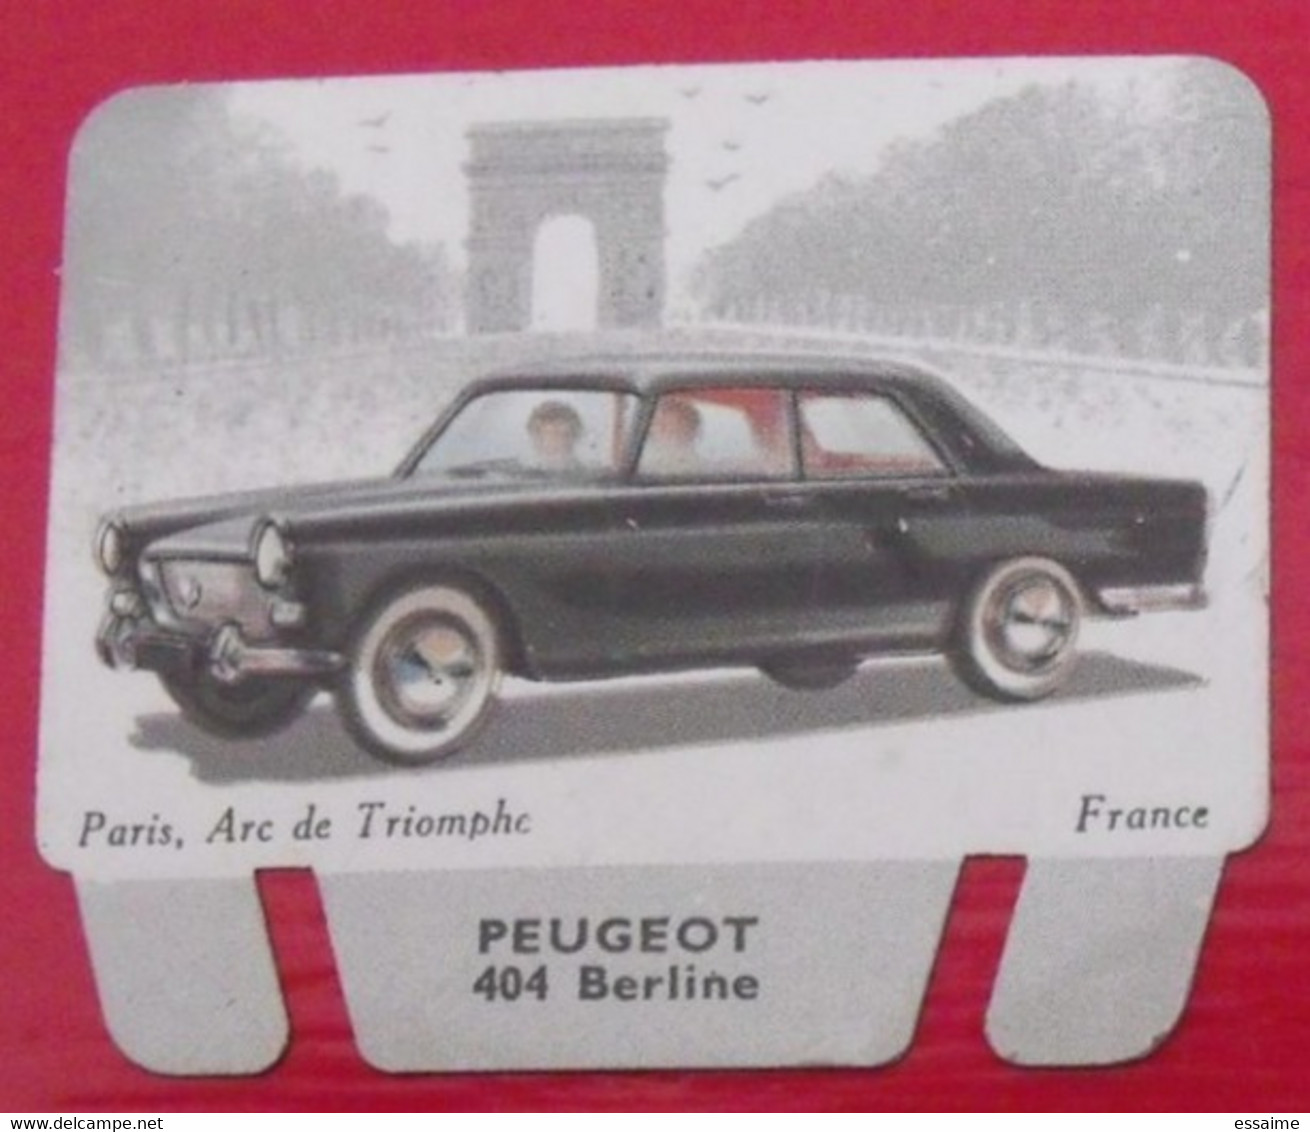 Plaque Peugeot 404. N° 2. Les Grandes Marques D'automobiles. Chocolat Cafés Martel Mota. Plaquette Métal Vers 1960 - Blechschilder (ab 1960)